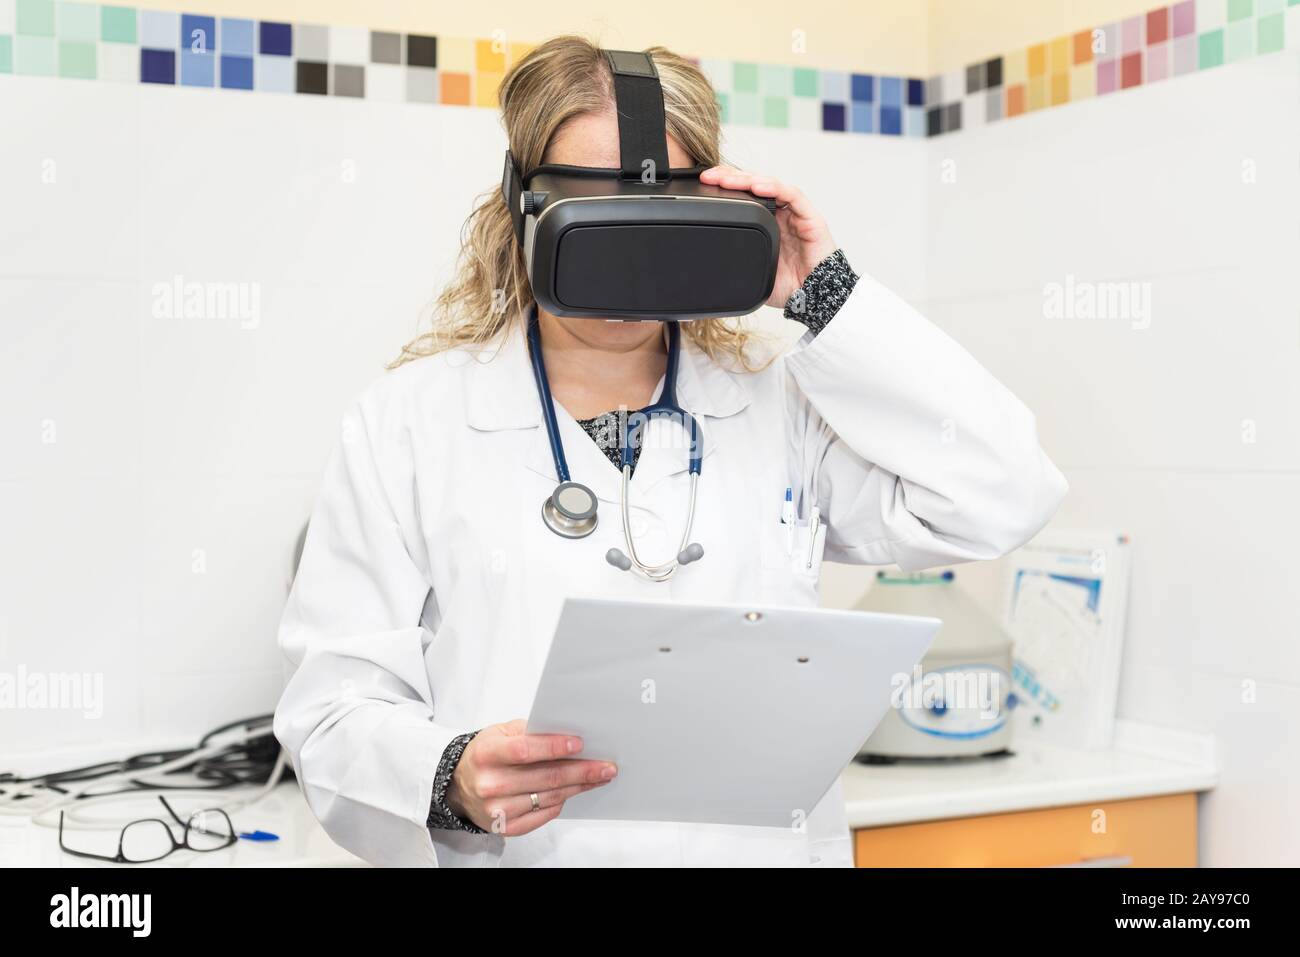 Chercheur scientifique à presse-papiers à l'aide de lunettes de réalité virtuelle pour la recherche en laboratoire Banque D'Images